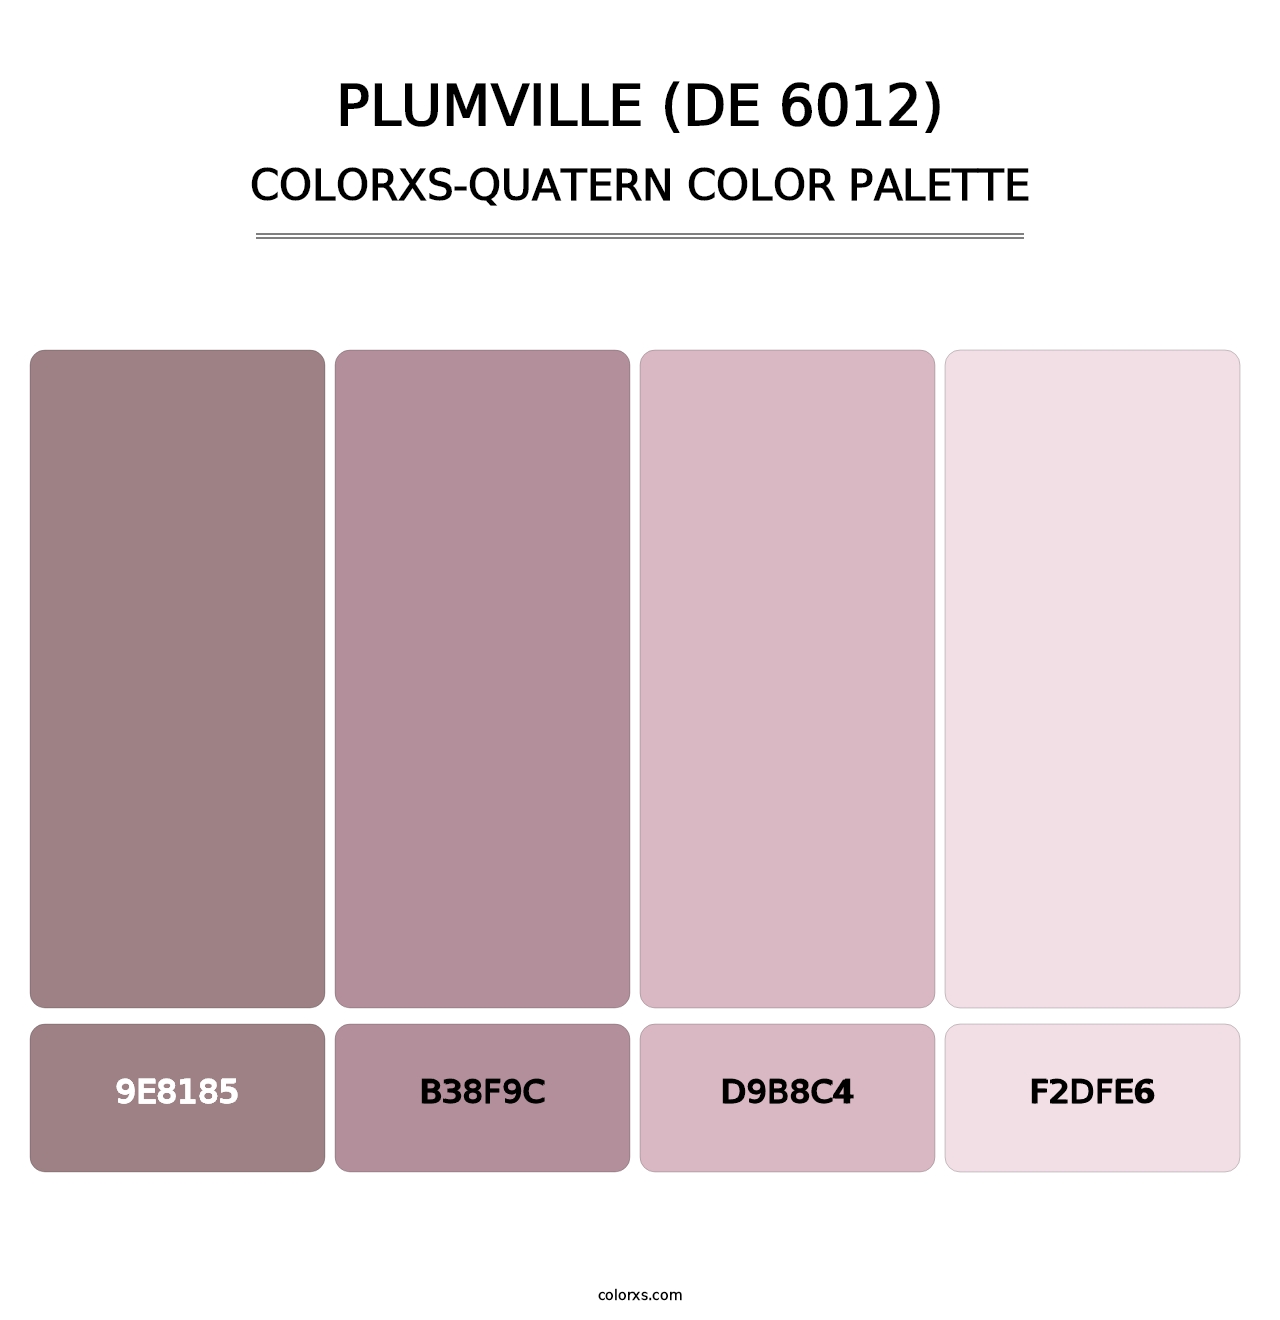 Plumville (DE 6012) - Colorxs Quatern Palette